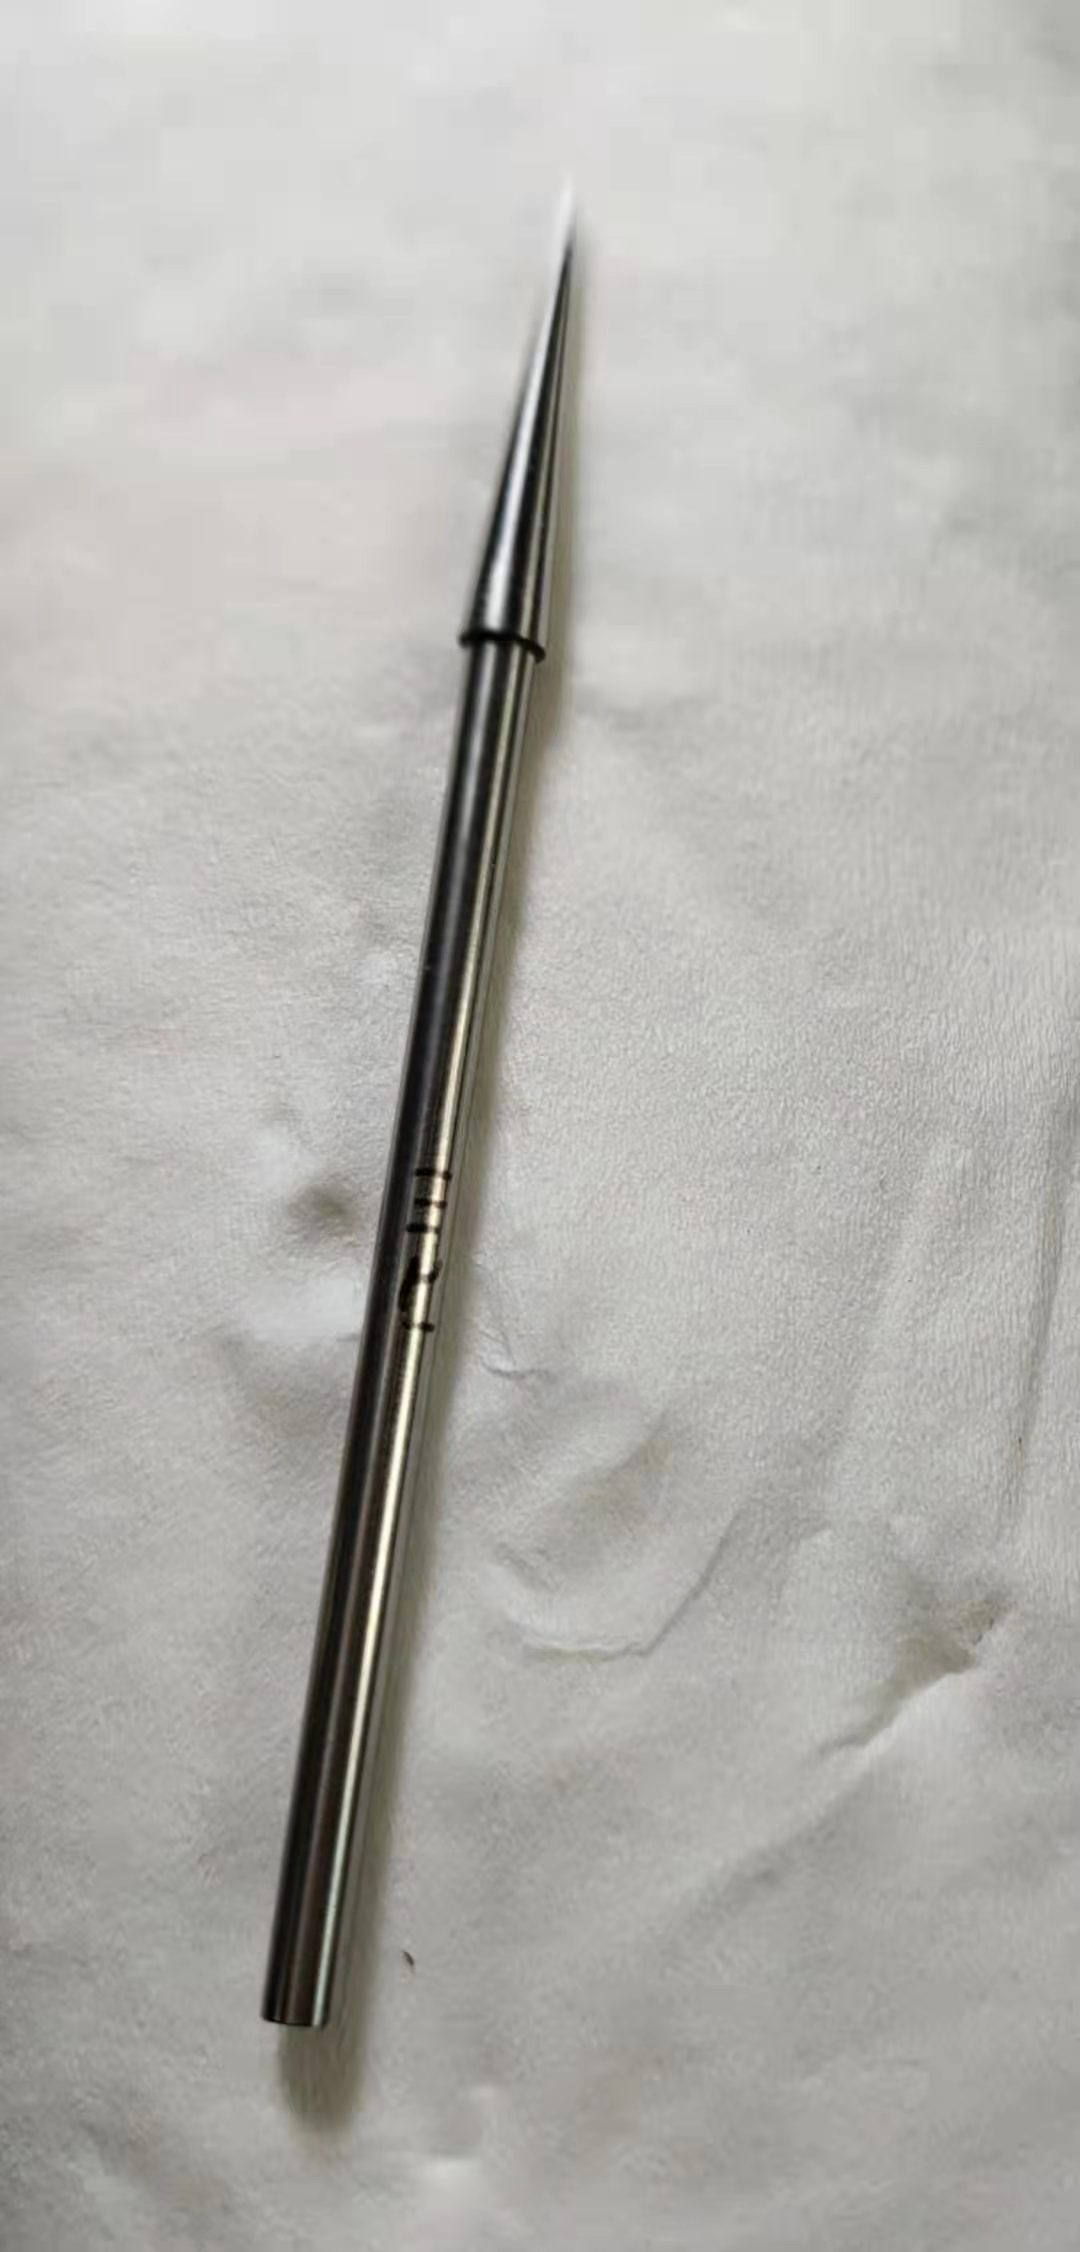 ASTM D1321 penetration needle